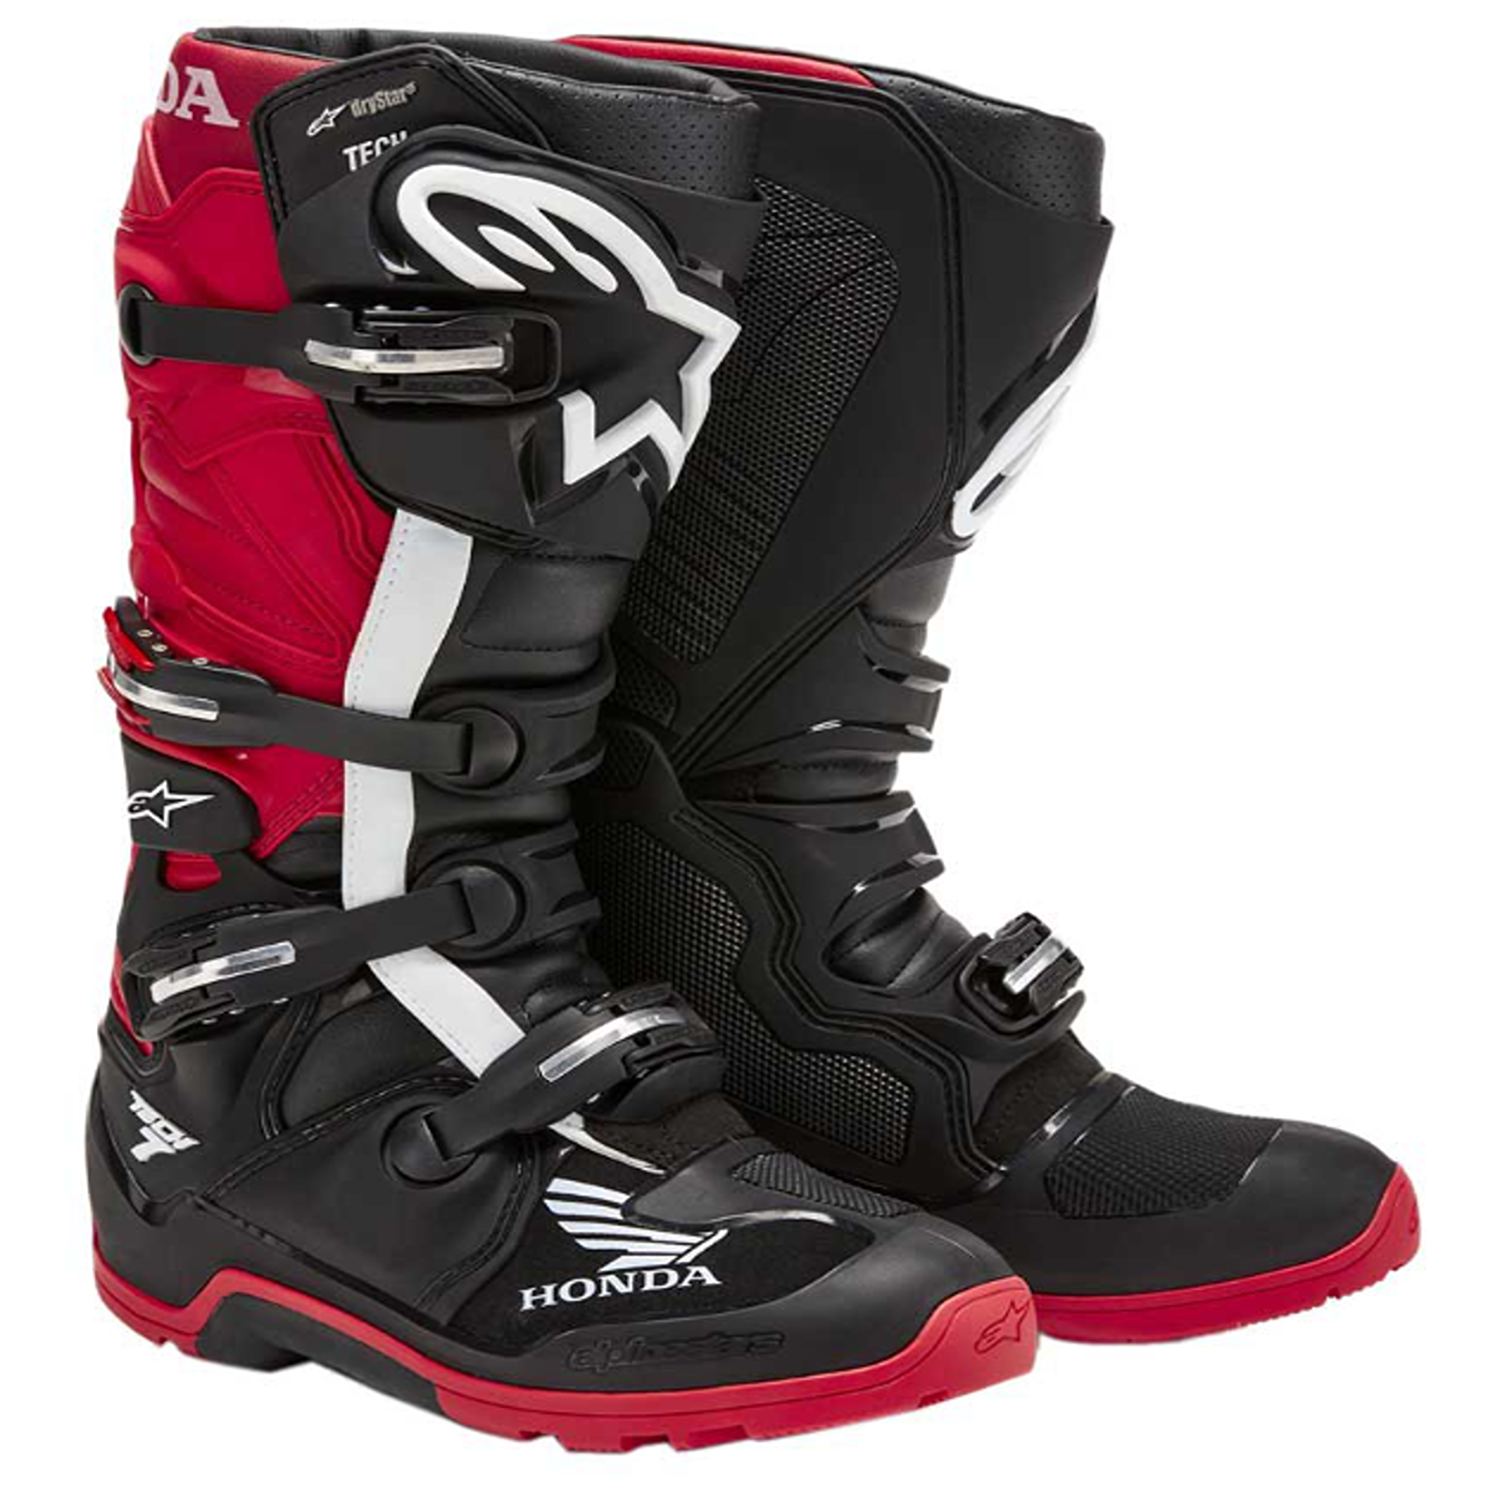 Image of Alpinestars Honda Tech 7 Enduro Drystar Boots Black Bright Red Größe US 5